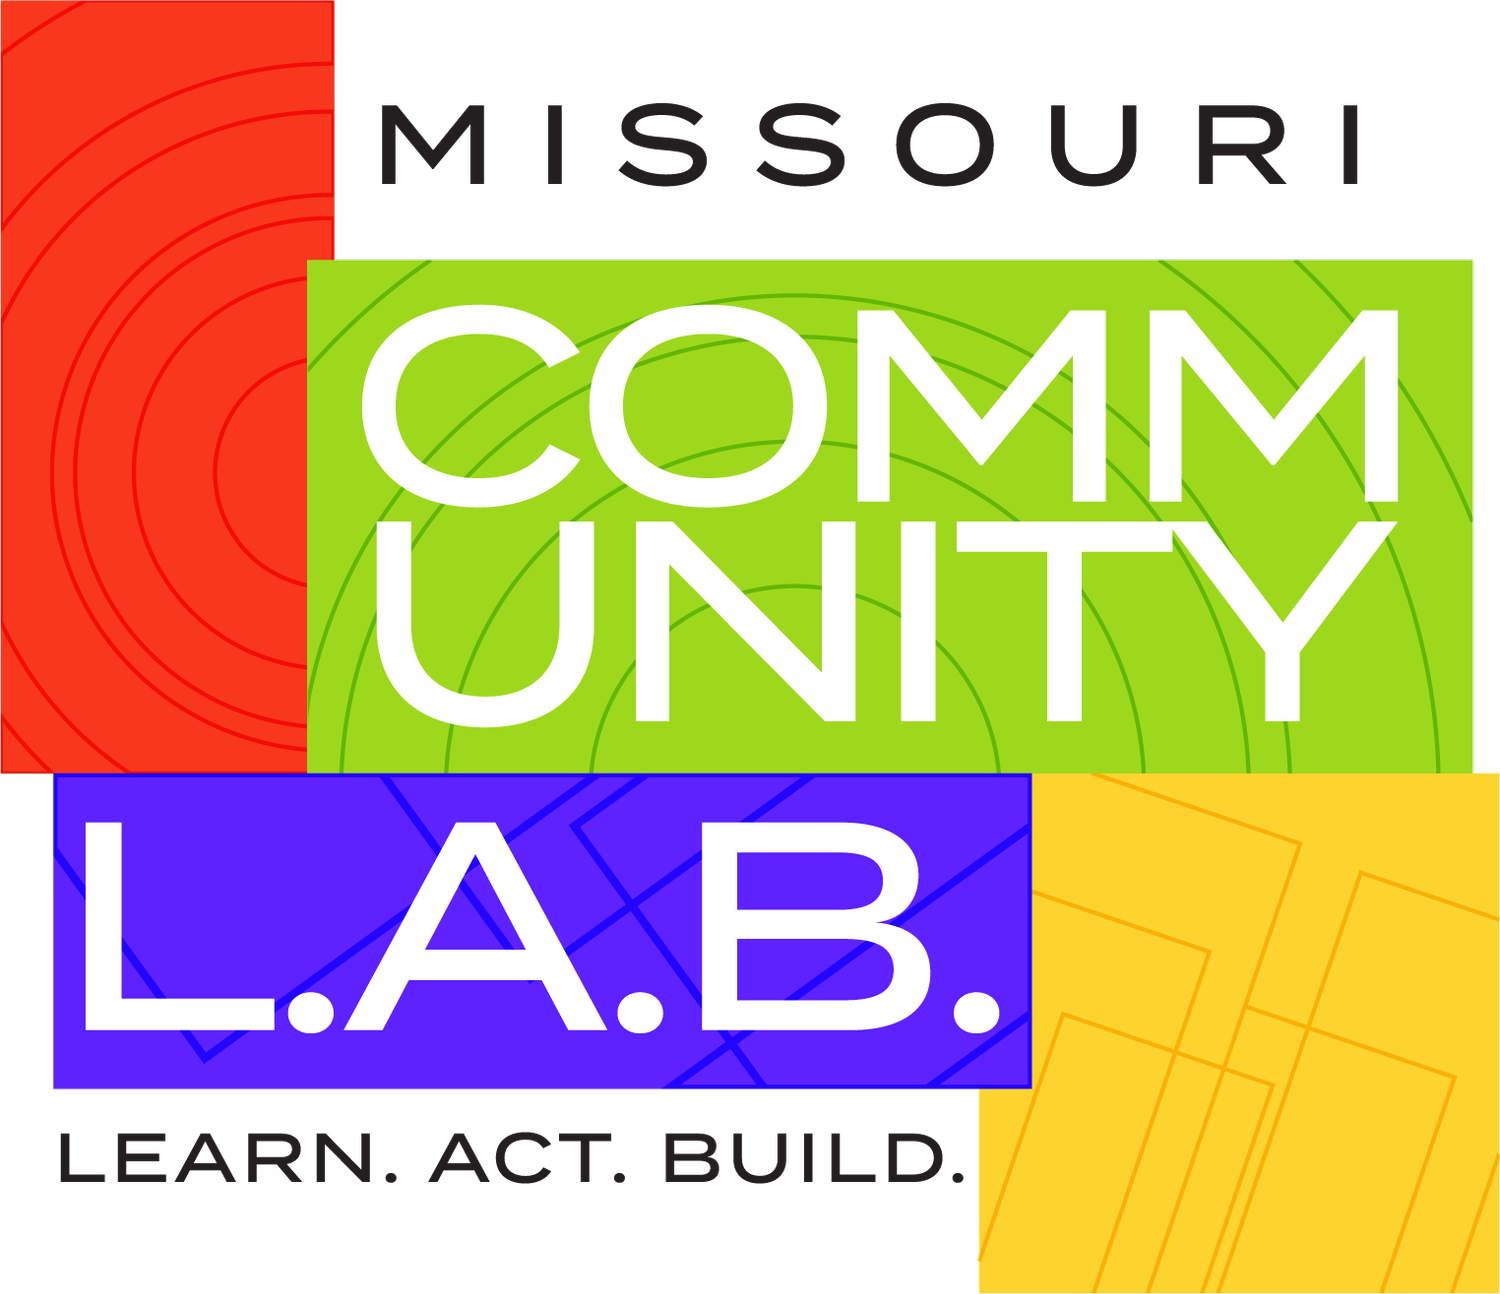 Missouri Community L.A.B.